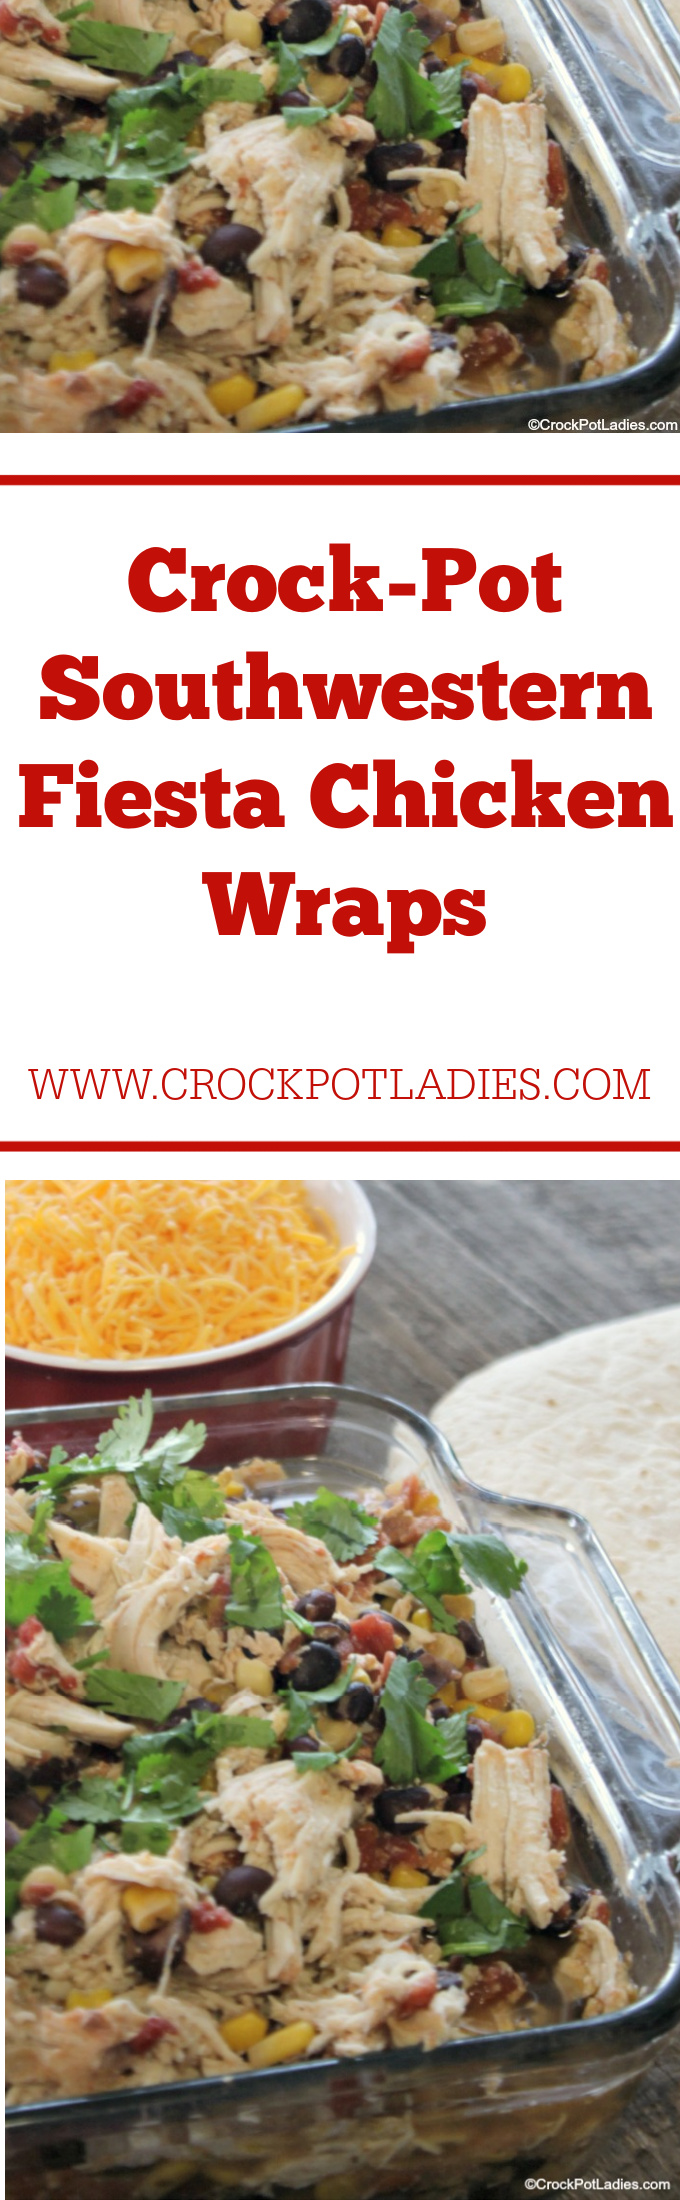 Crock-Pot Southwestern Fiesta Chicken Wraps